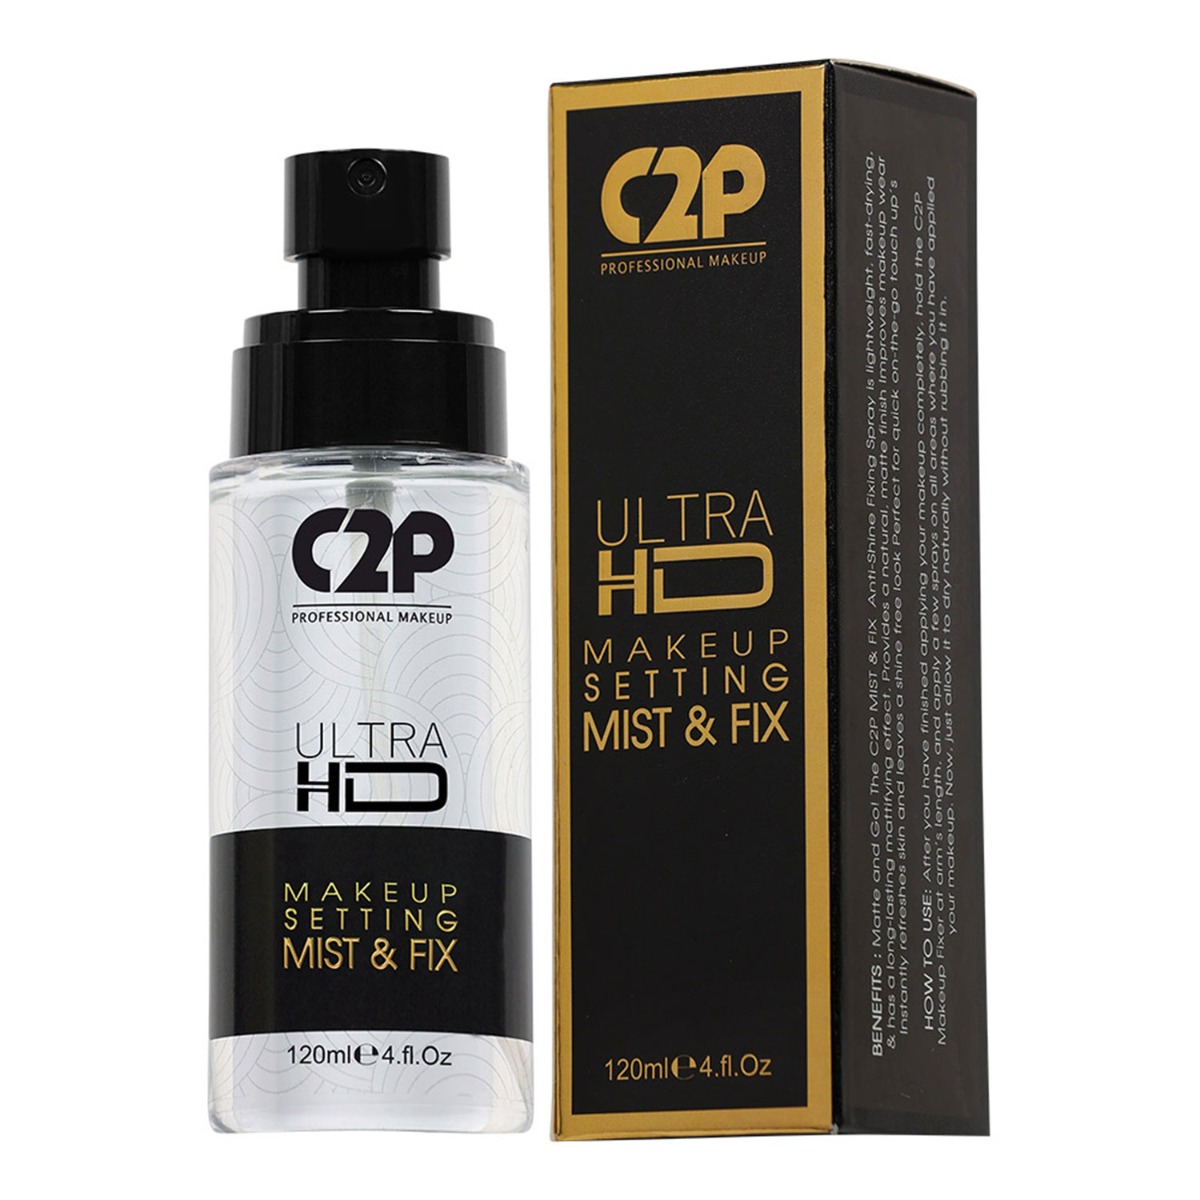 C2P Pro Ultra HD Makeup Setting Mist & Fix - Plain, 120ml